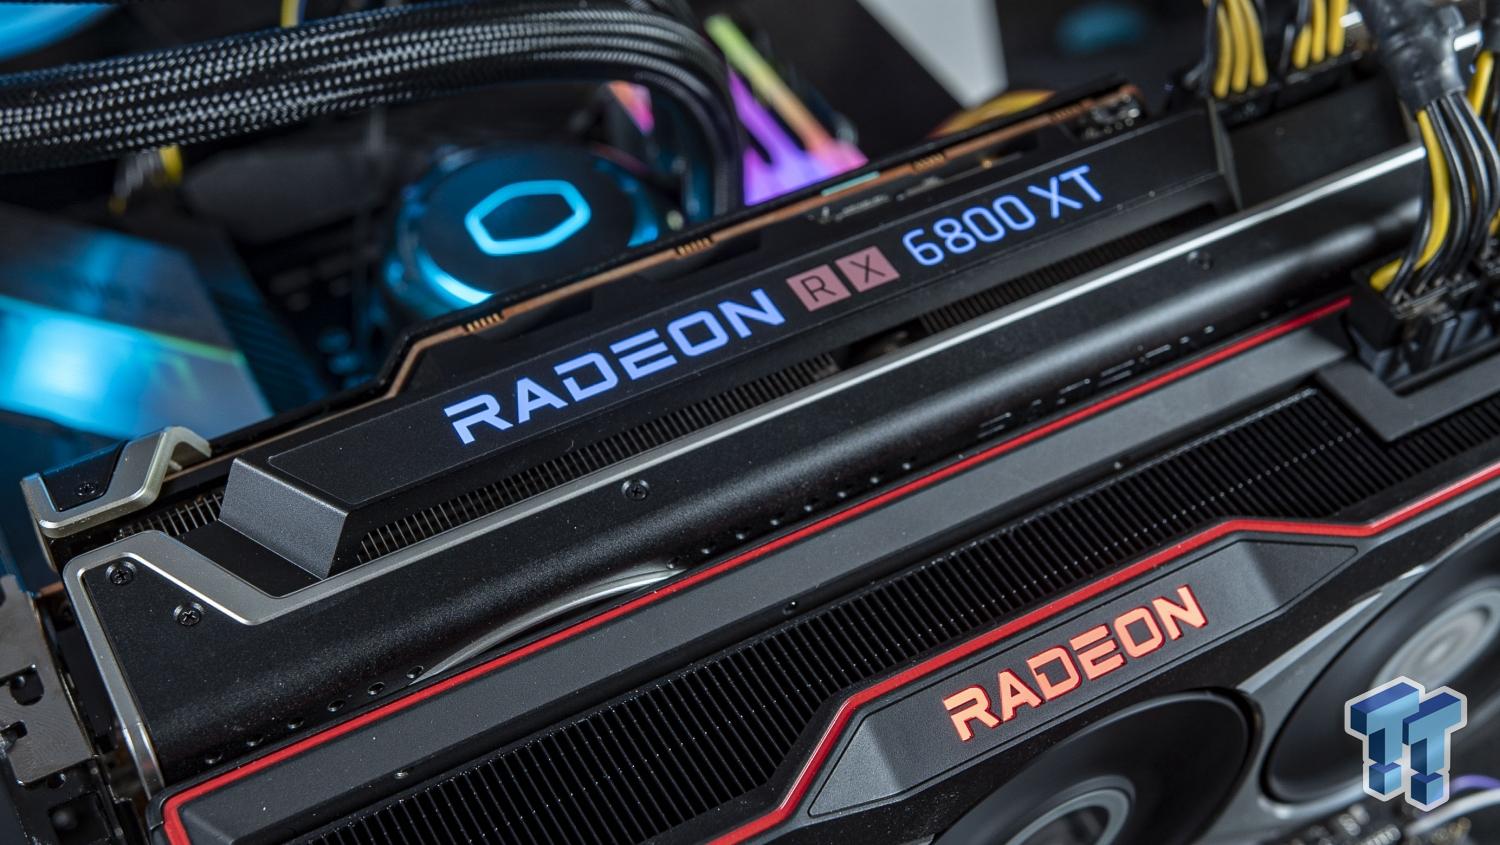 AMD Radeon RX 6800 XT in mGPU: 2 x Big Navi GPUs = Insane Performance